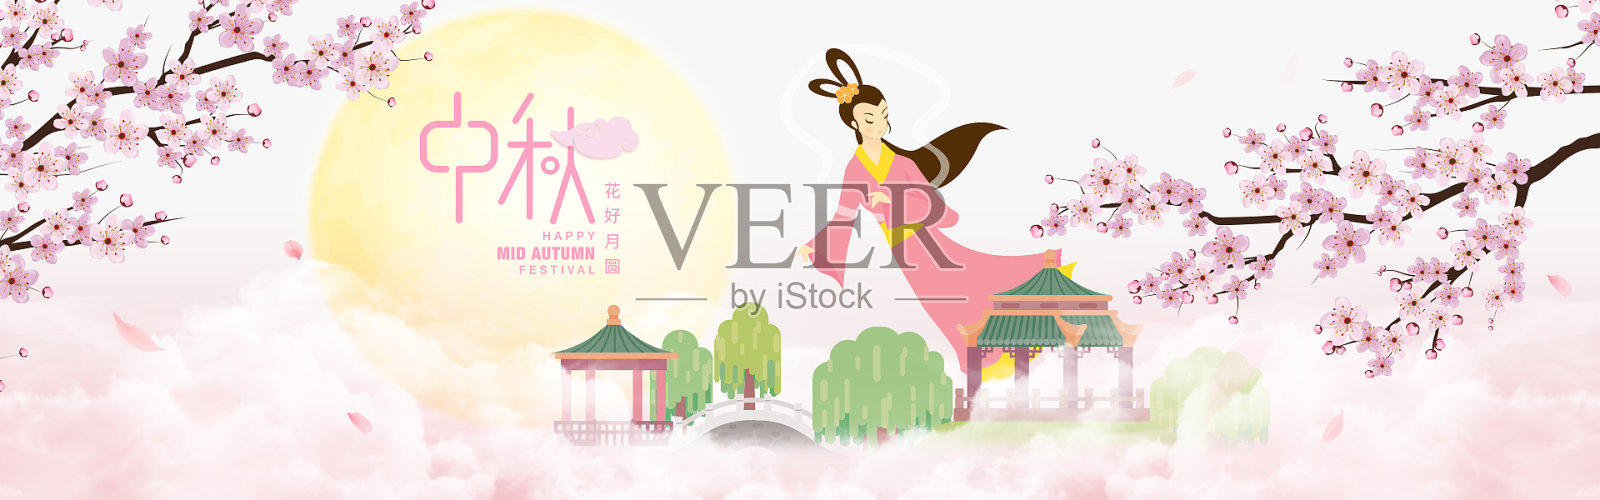 粉色浪漫风中秋节海报设计模板素材